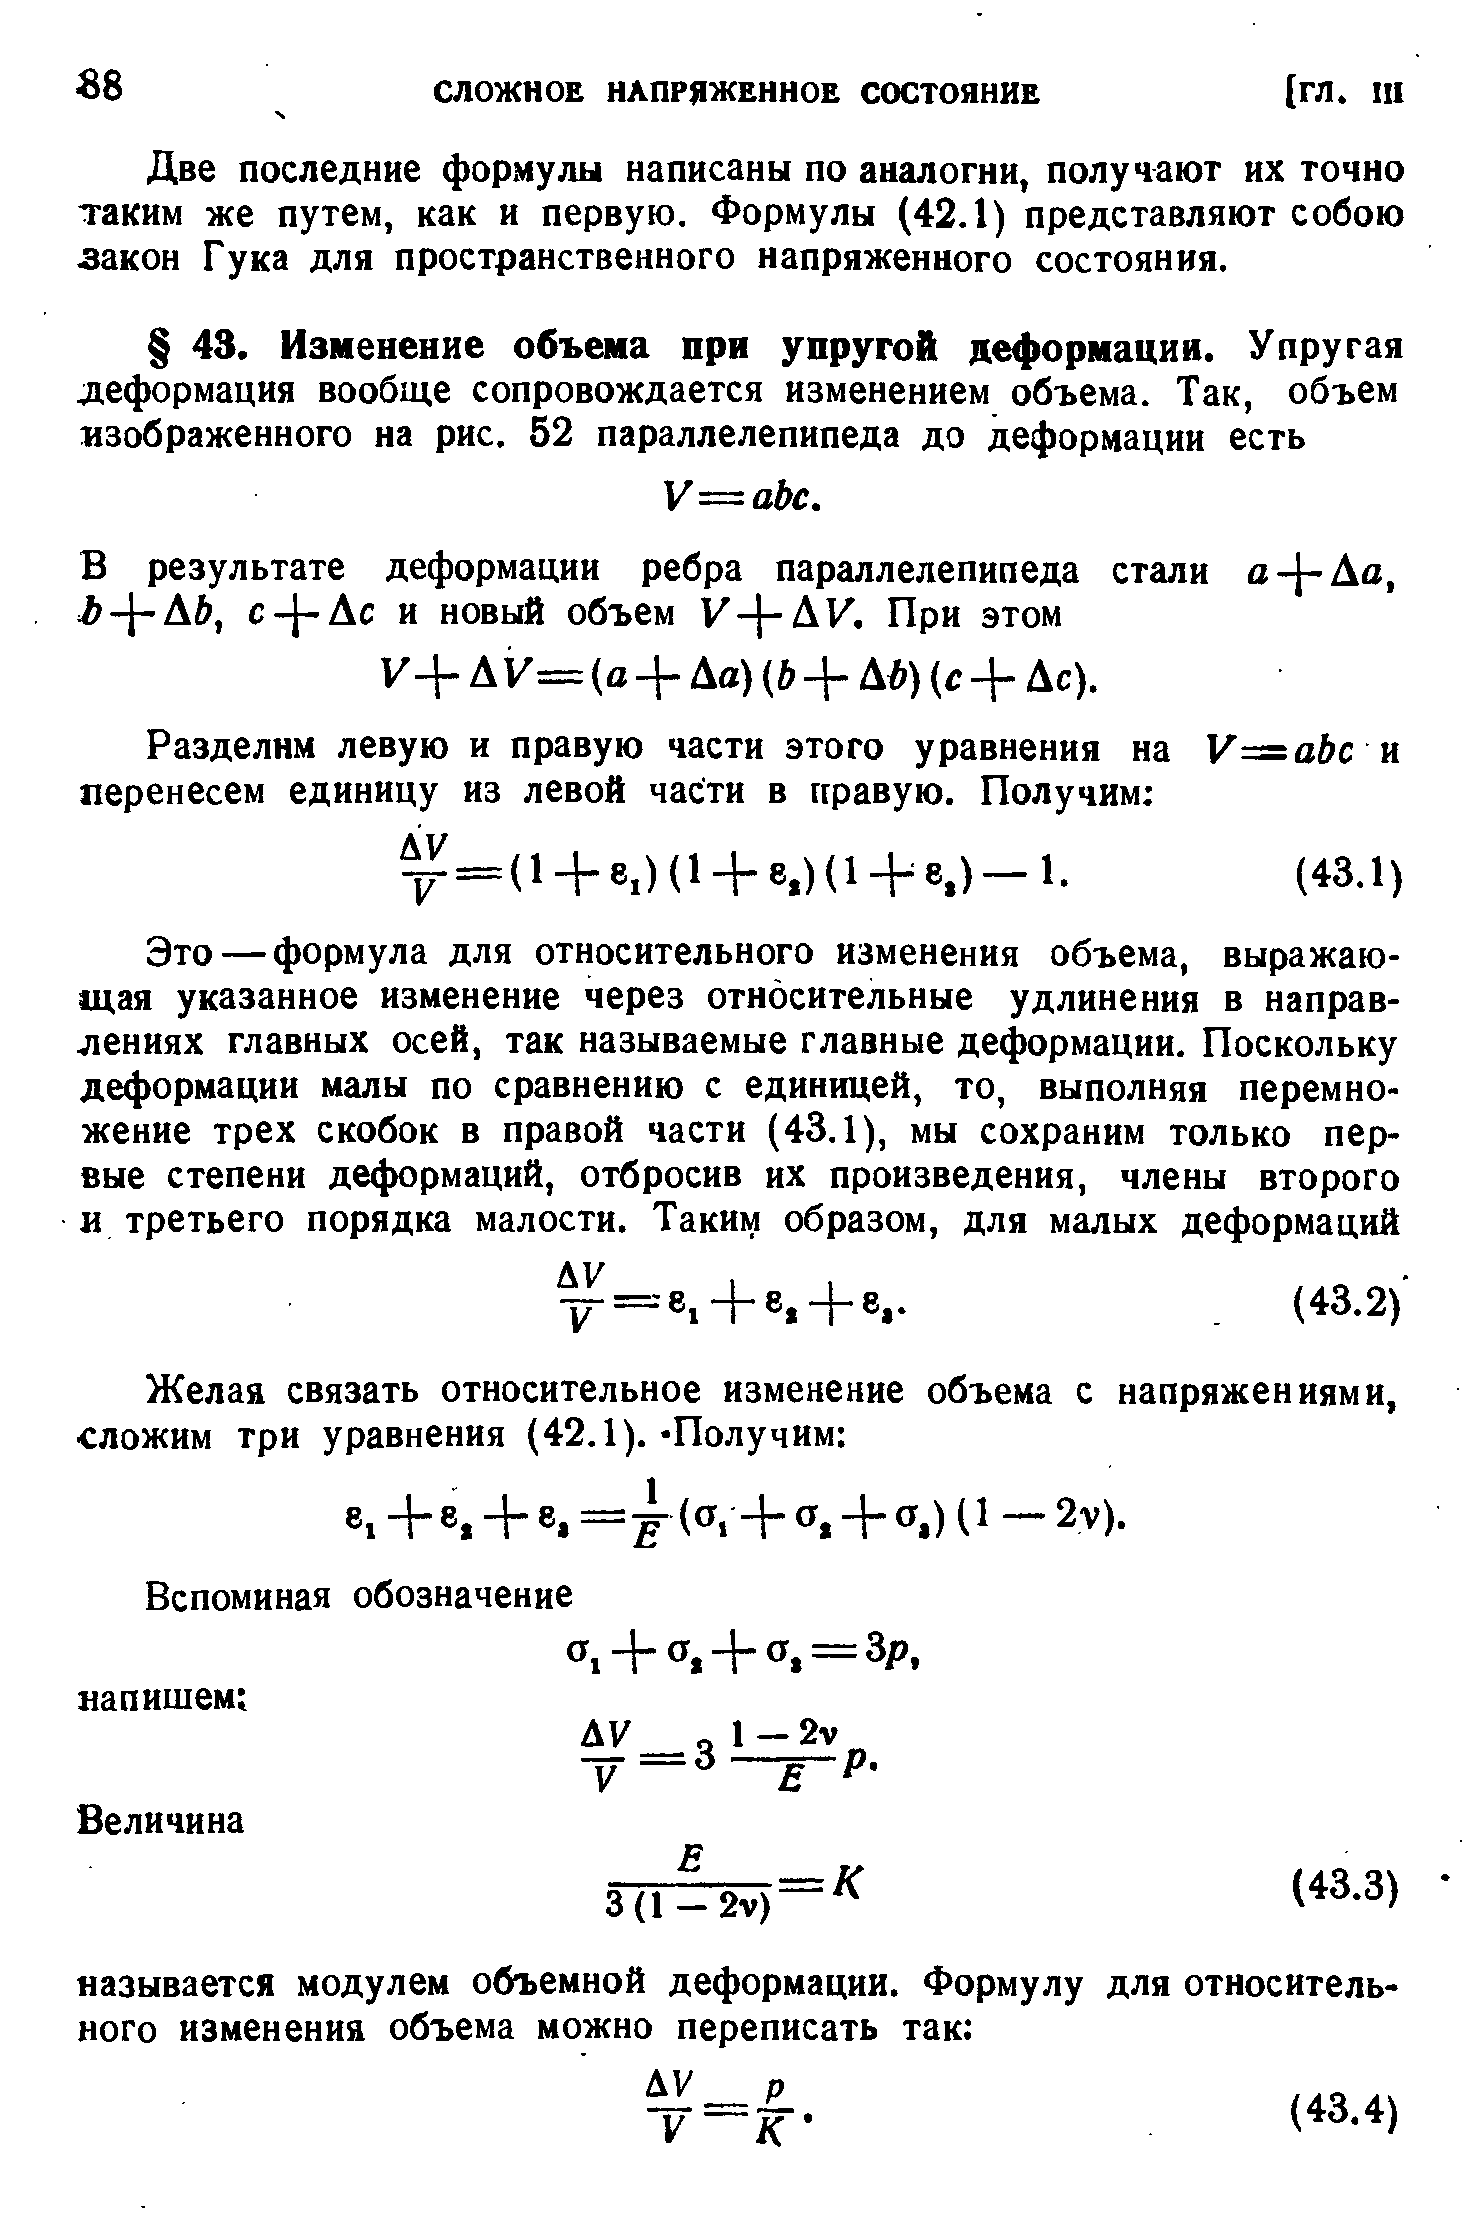 Две последние формулы написаны по аналогии, получают их точно таким же путем, как и первую. Формулы (42.1) представляют собою закон Гука для пространственного напряженного состояния.
